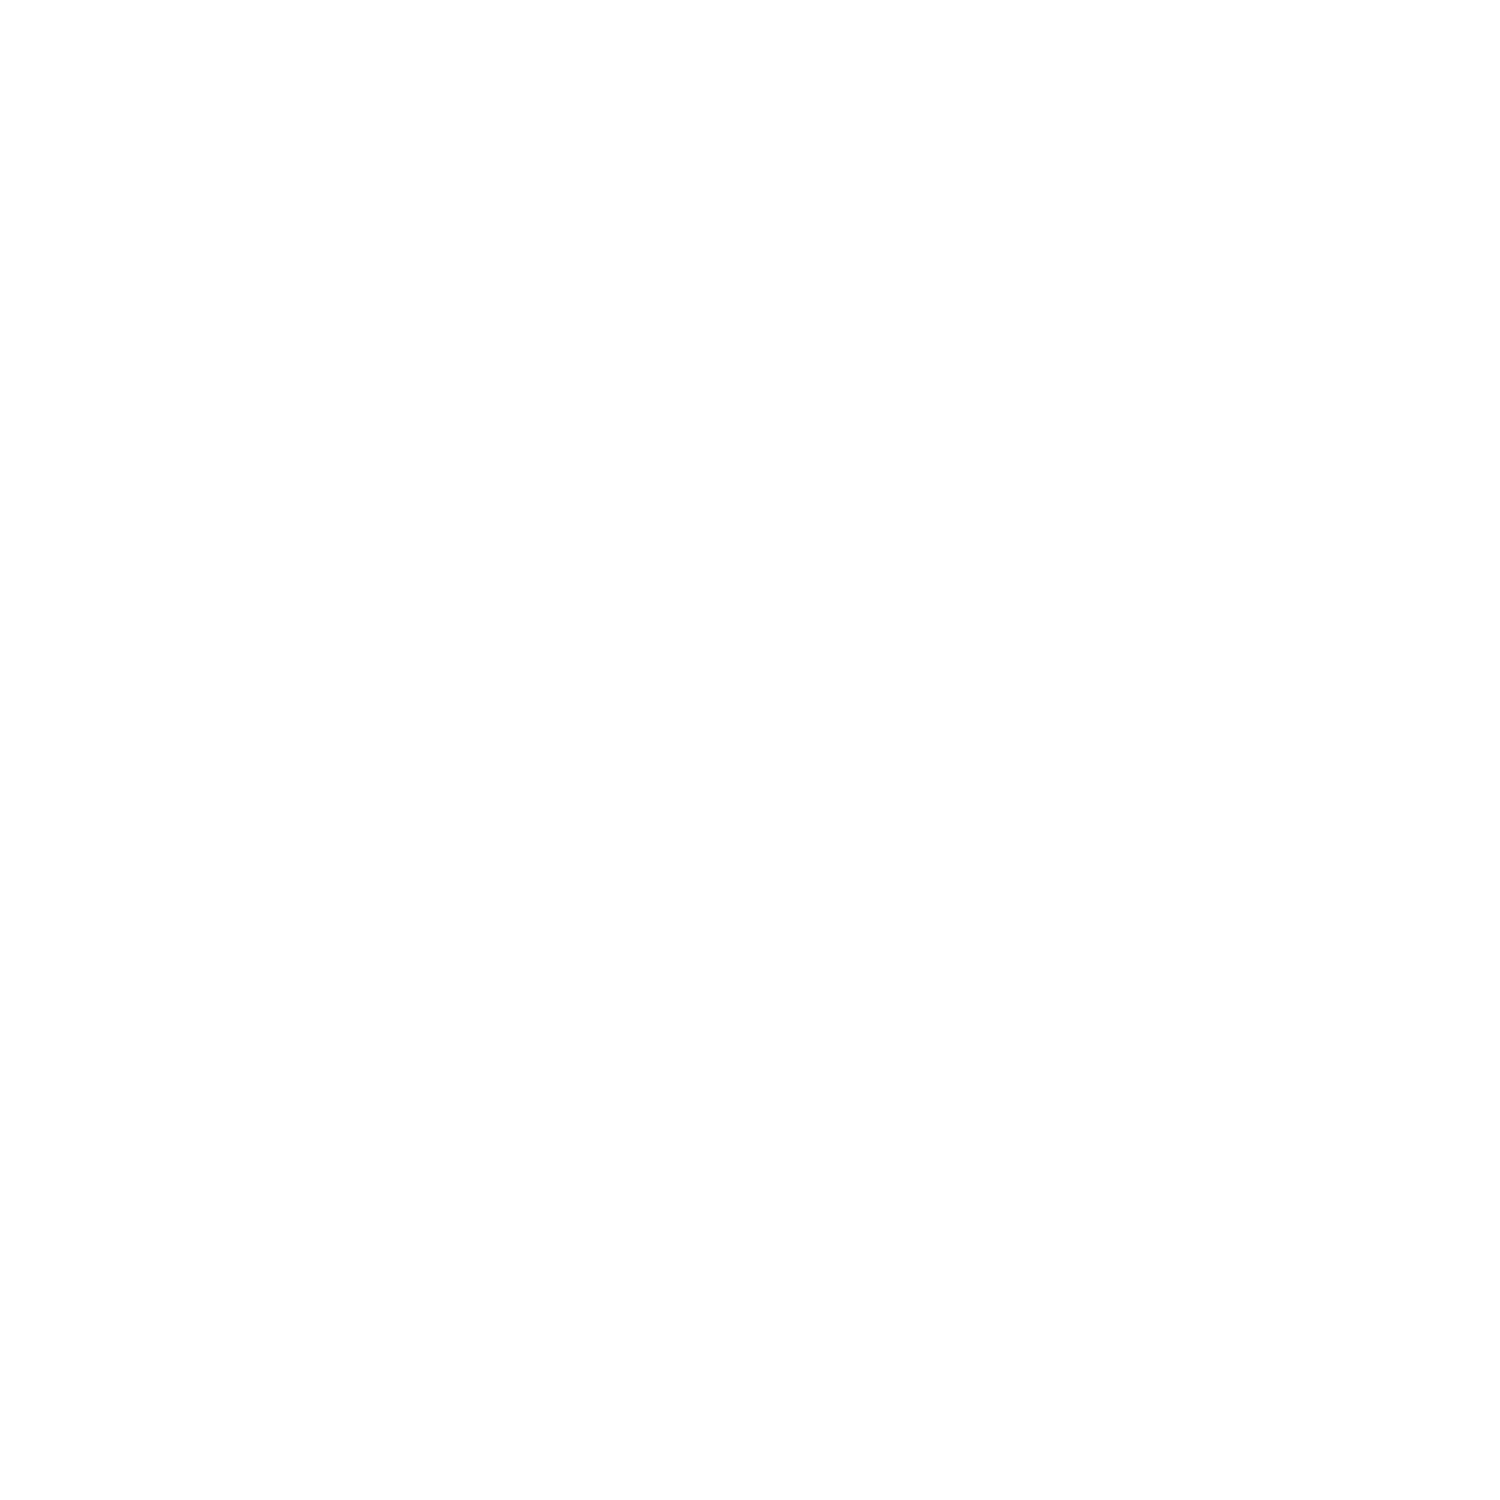 Peter Baxter 